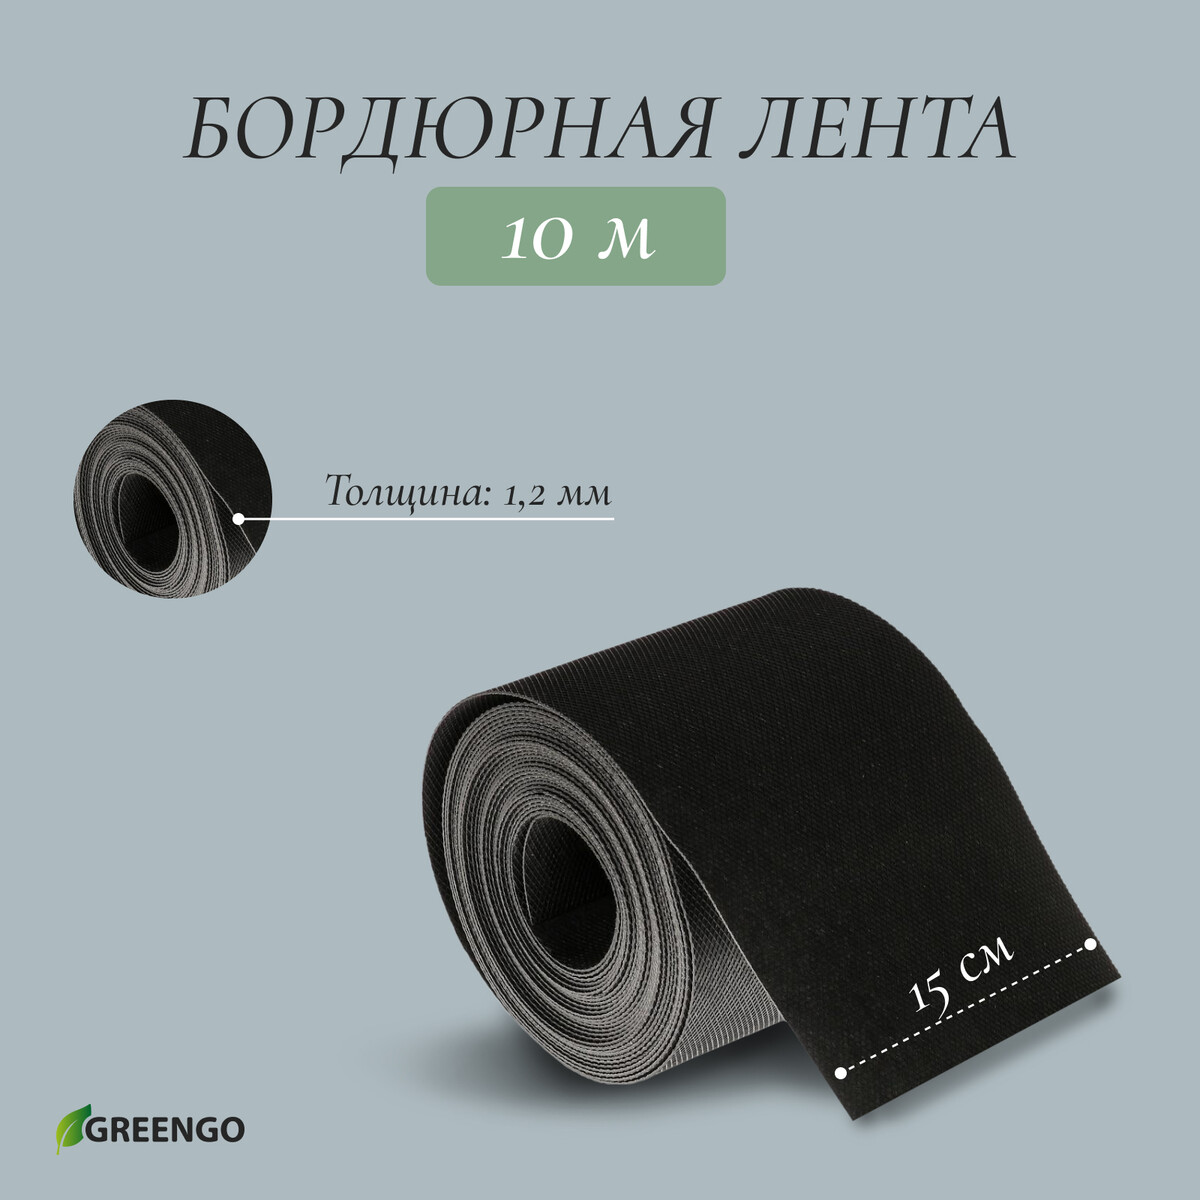 Лента бордюрная, 0.15 × 10 м, толщина 1.2 мм, пластиковая, черная, greengo кассета для рассады на 6 ячеек по 120 мл пластиковая черная 18 × 13 × 6 см в наборе 10 шт greengo